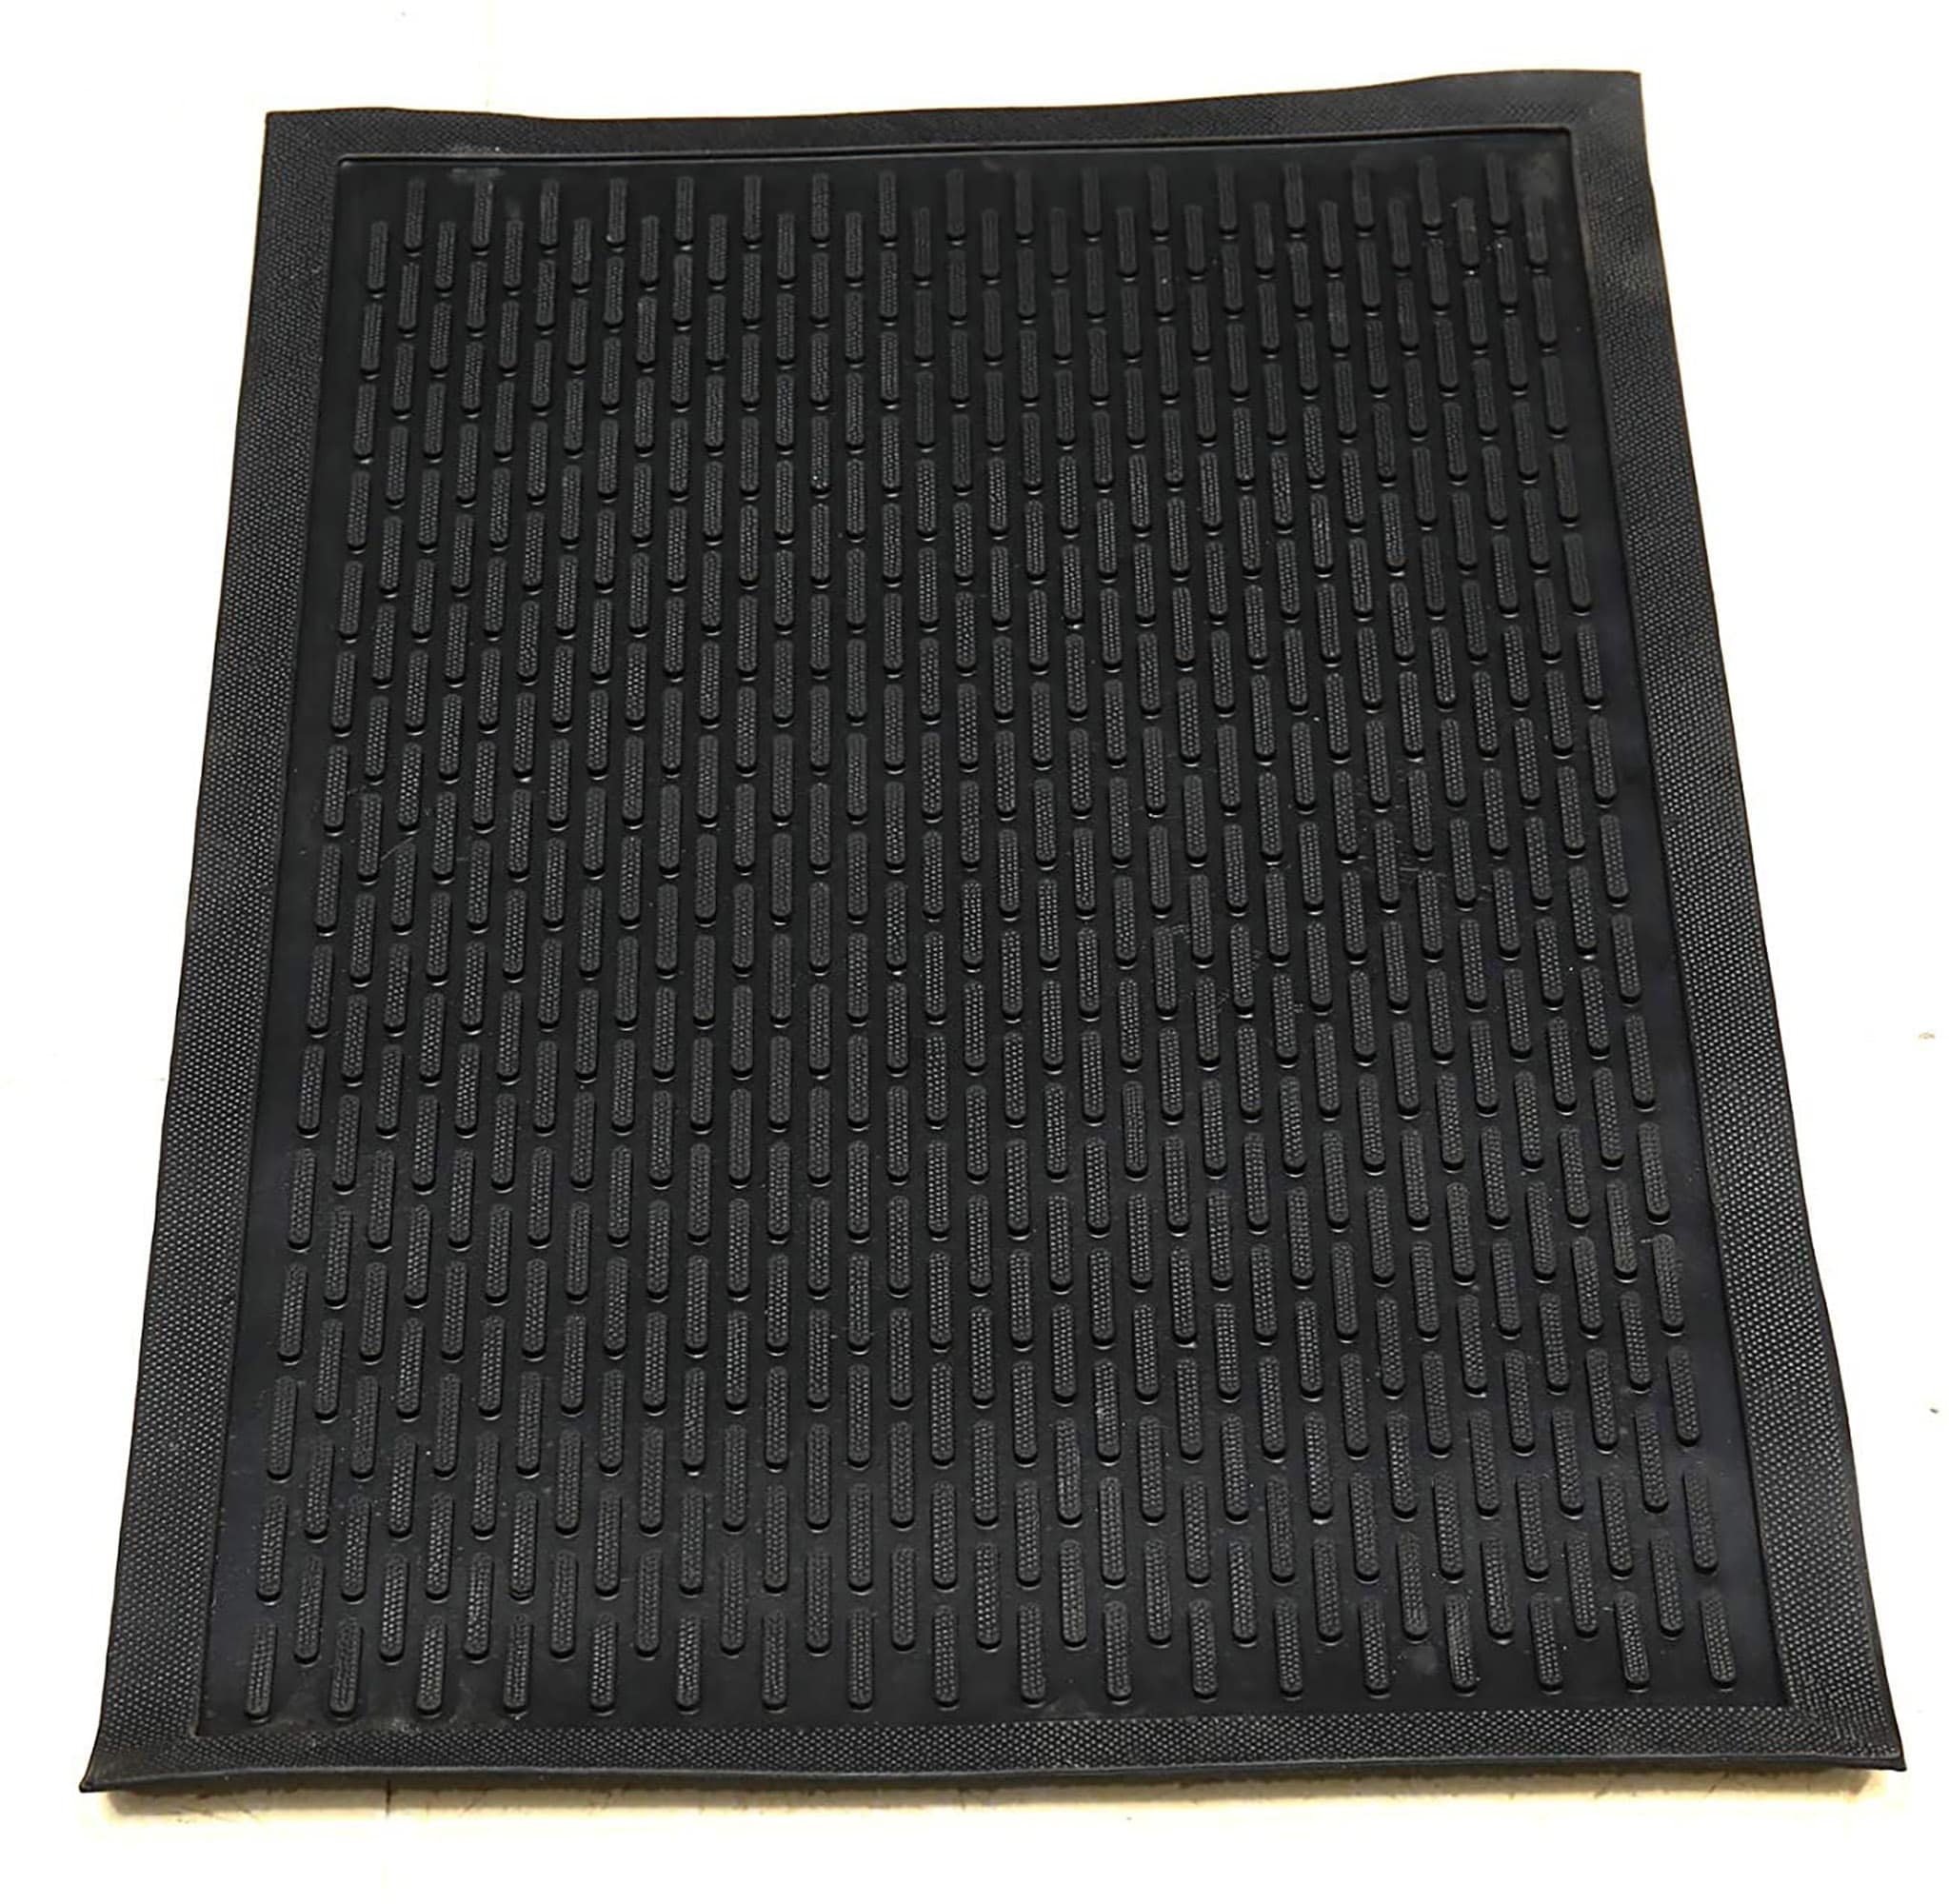 Ottomanson Easy Clean, Waterproof Non-Slip Indoor/Outdoor Rubber Doormat,  18 x 30, Black Lines